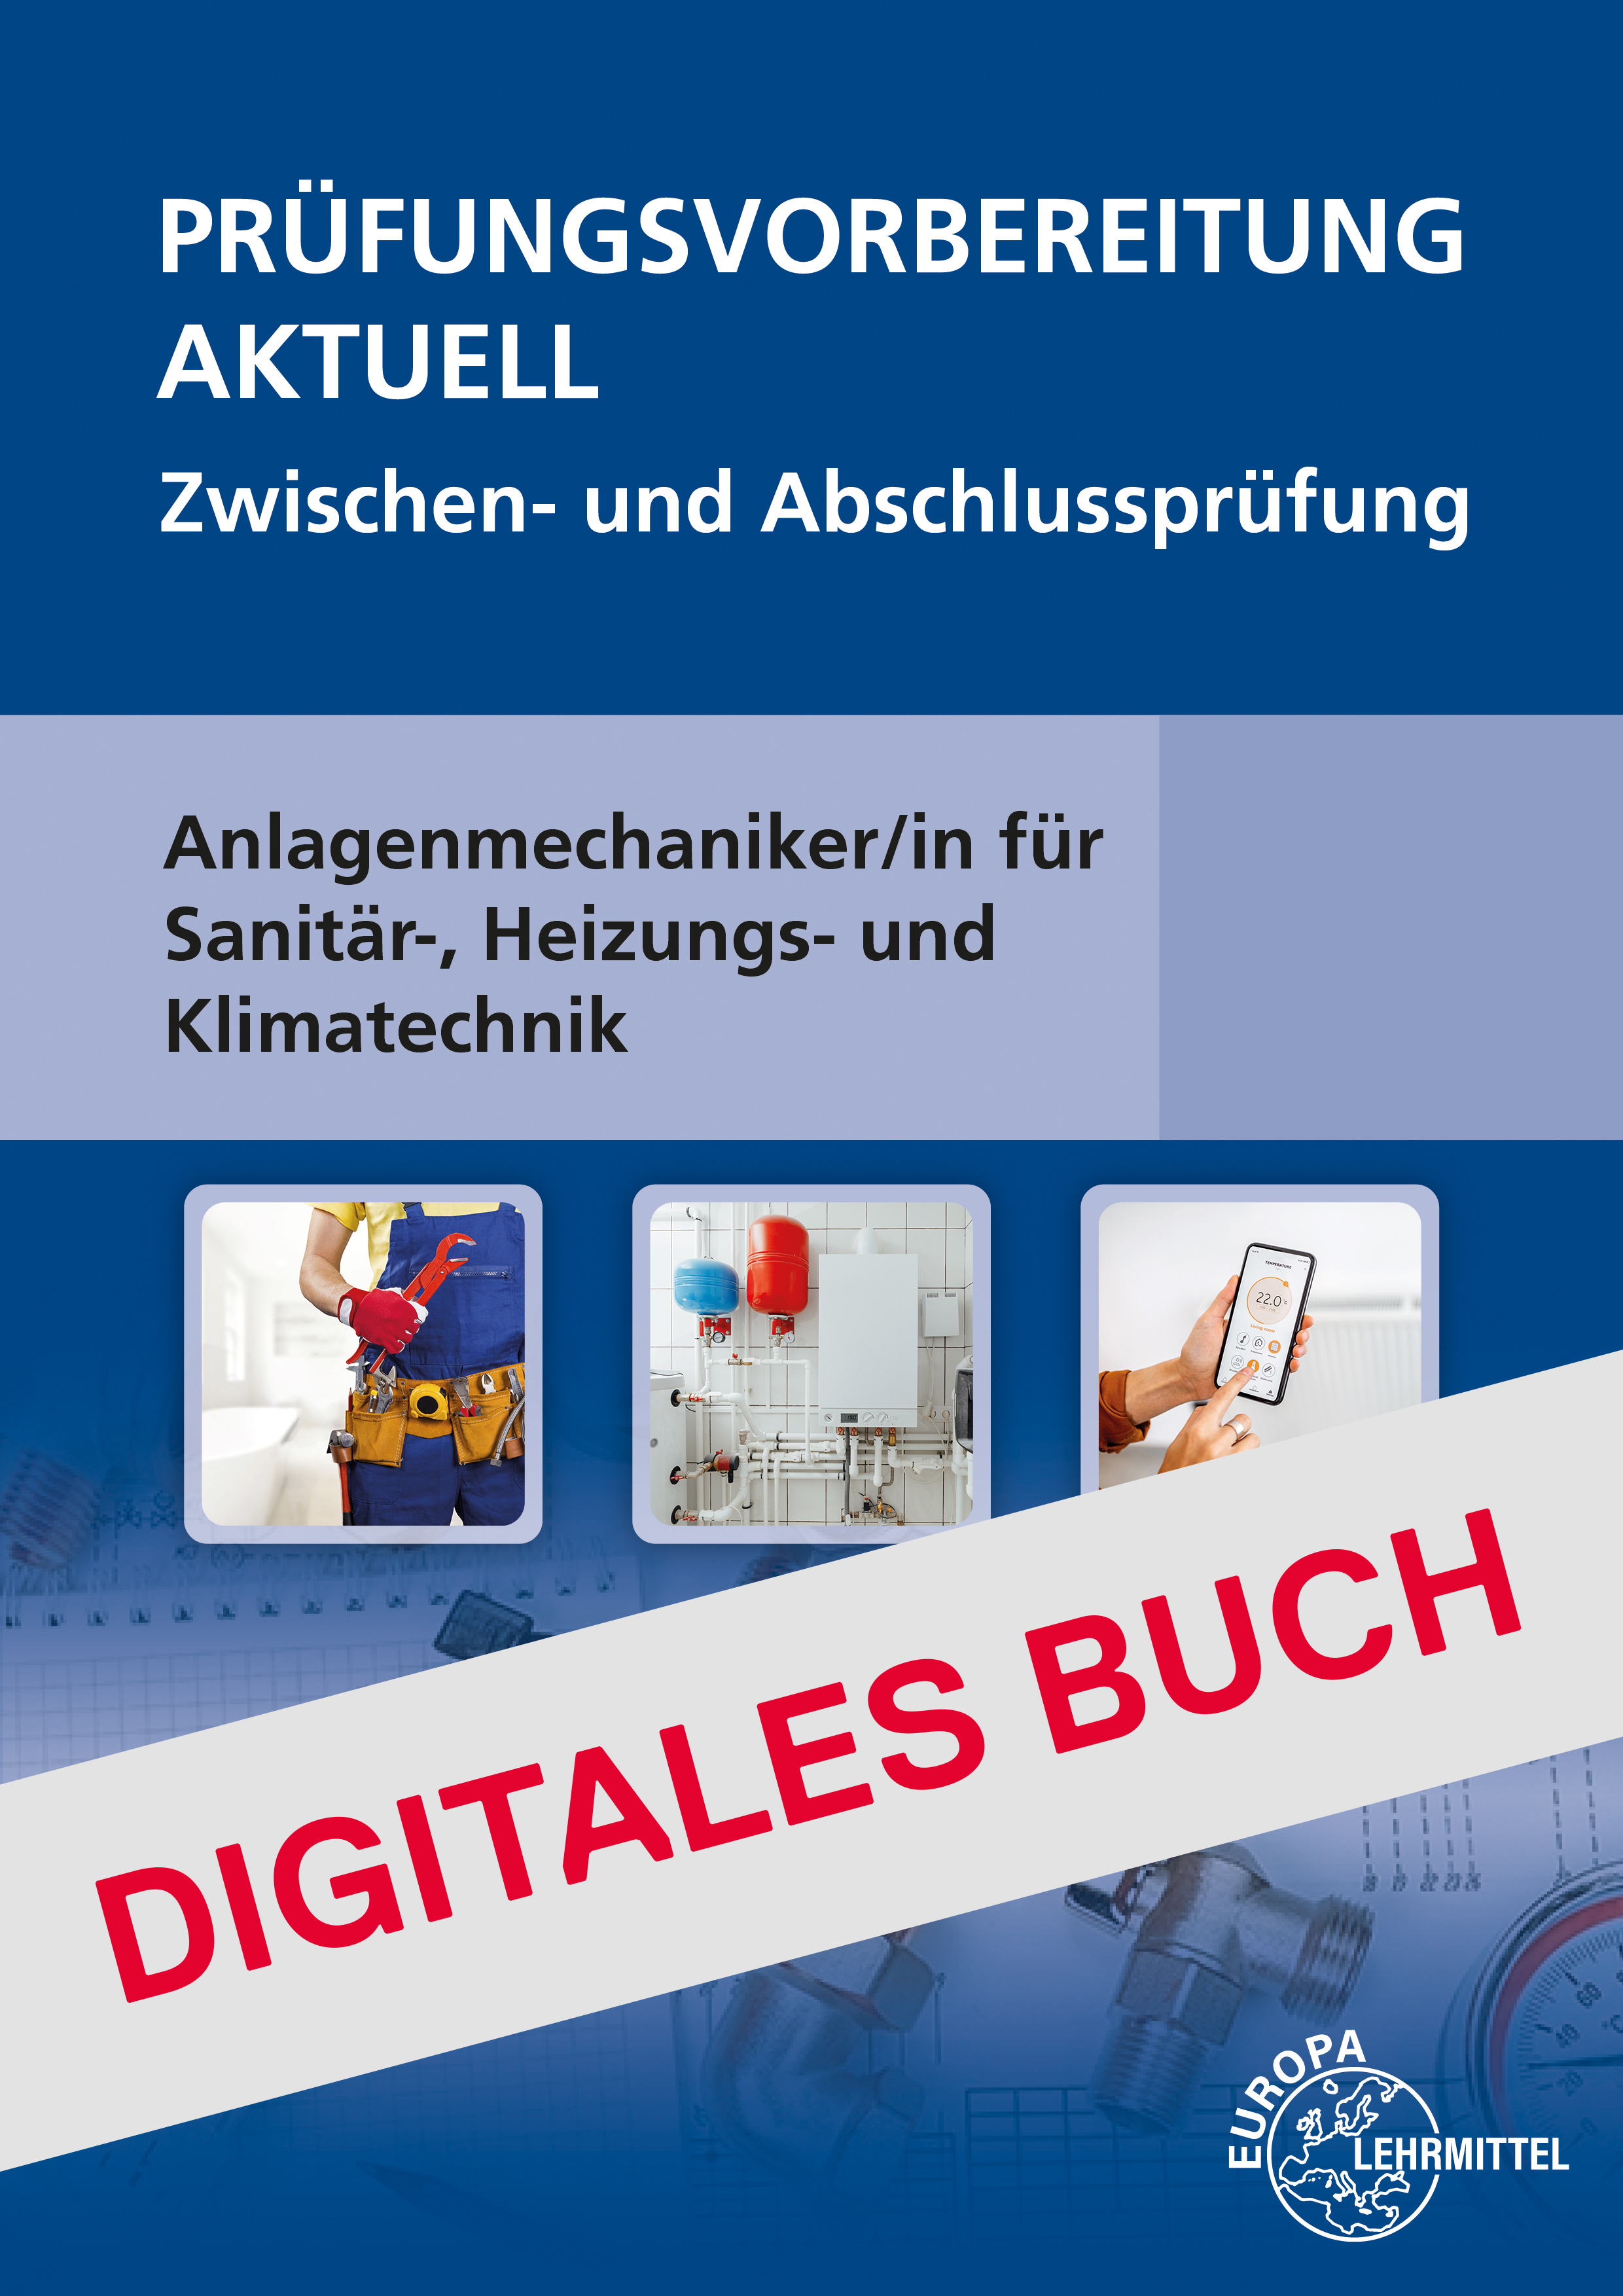 Prüfungsvorbereitung aktuell Anlagenmechaniker/-in - Digitales Buch